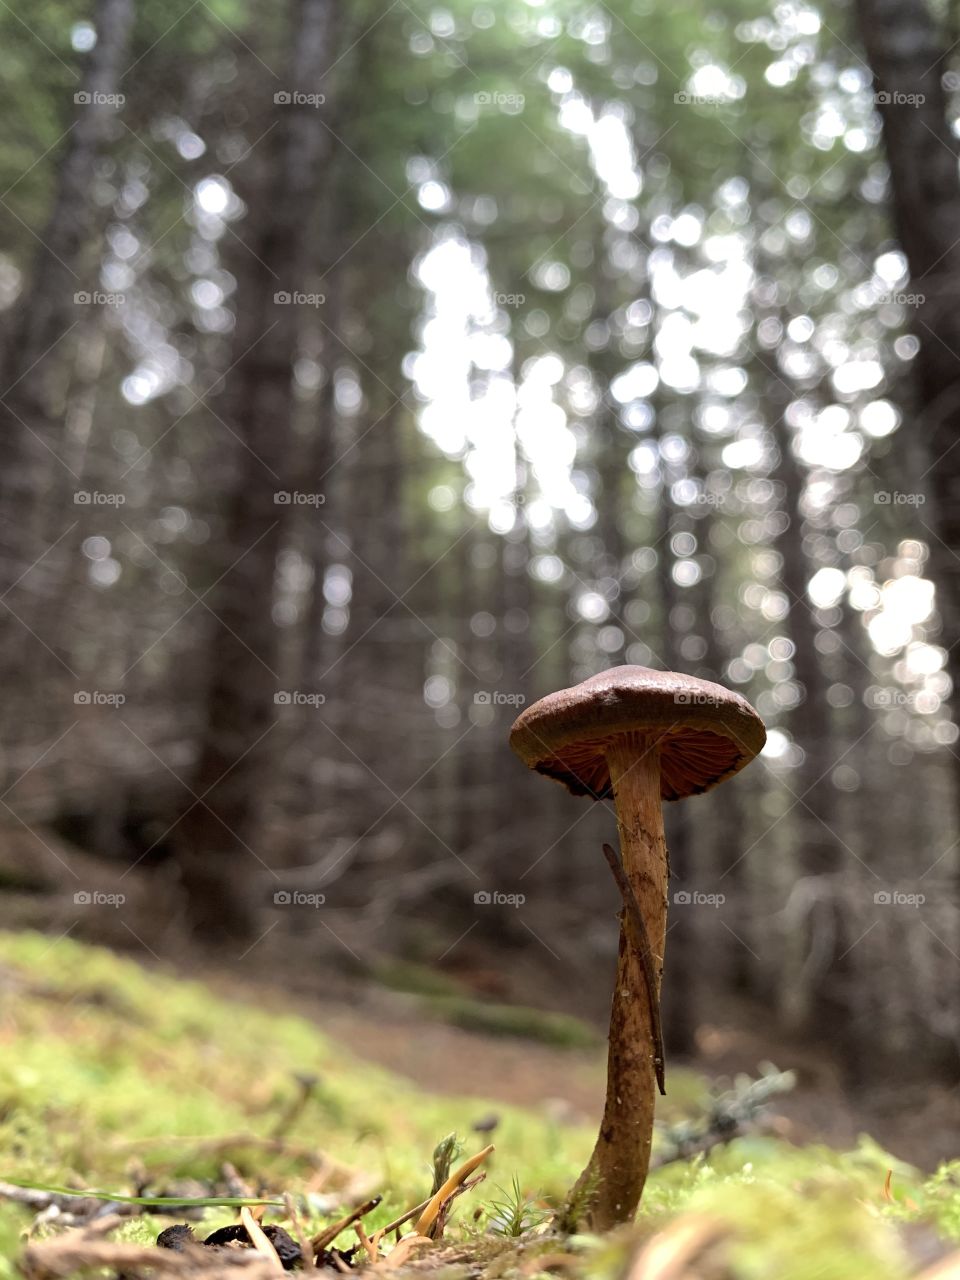 Pine needles on mushroom 